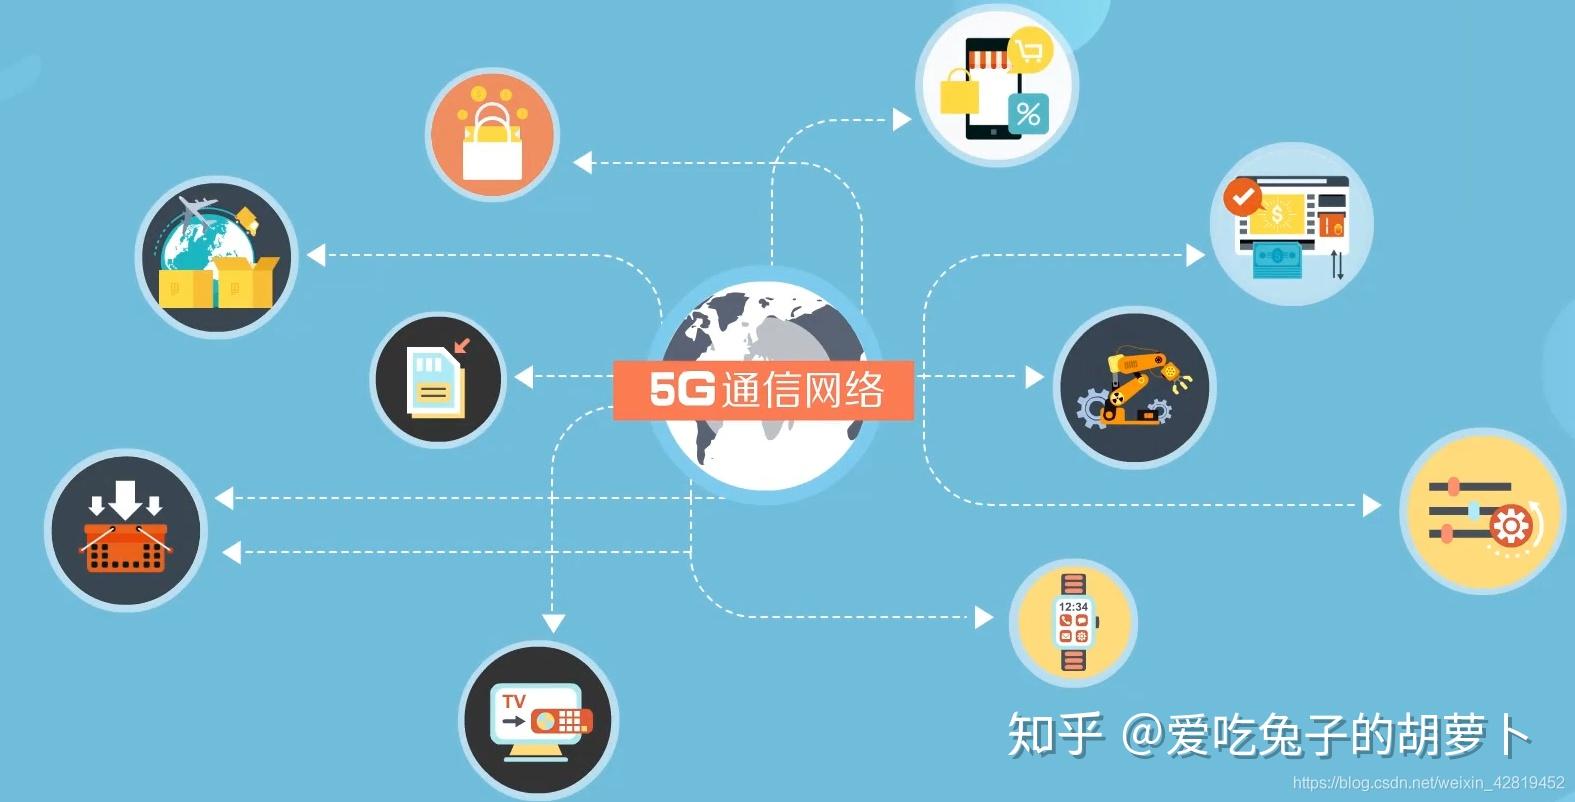 5G网络安全性探讨：迎接高速通信带来的挑战与机遇  第1张